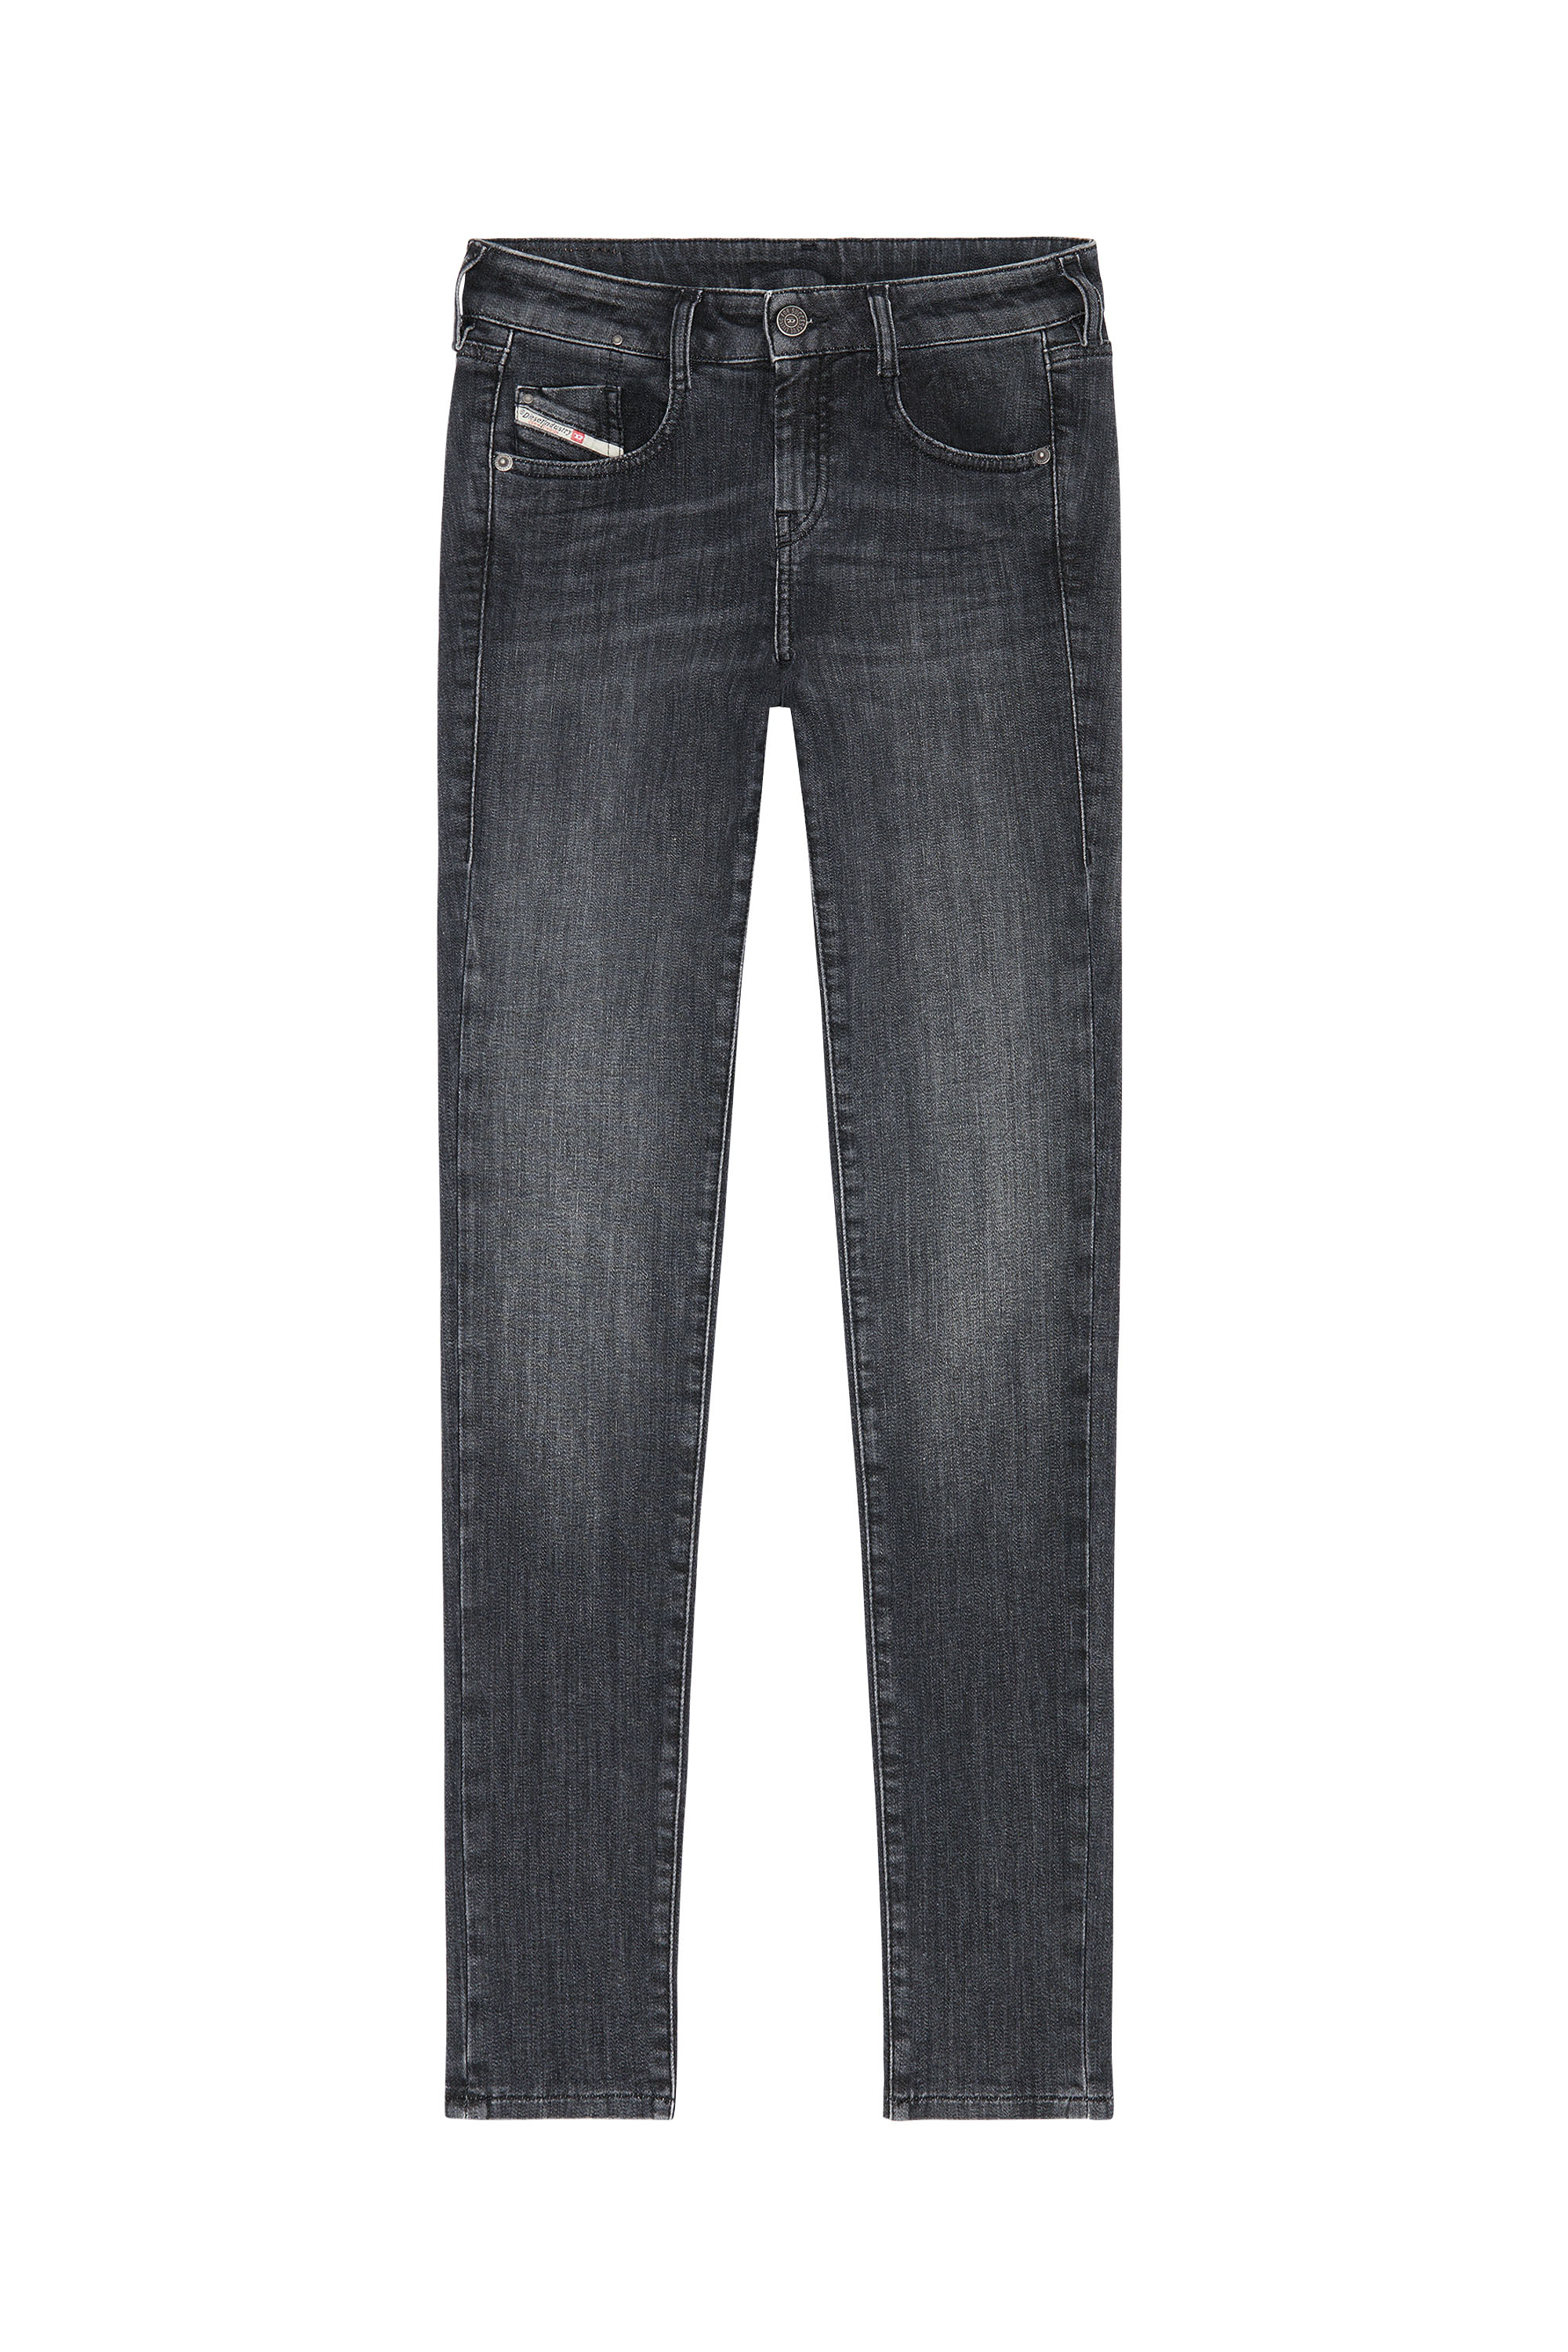 Diesel - D-Ollies JoggJeans® 09D52 Slim, Black/Dark grey - Image 3